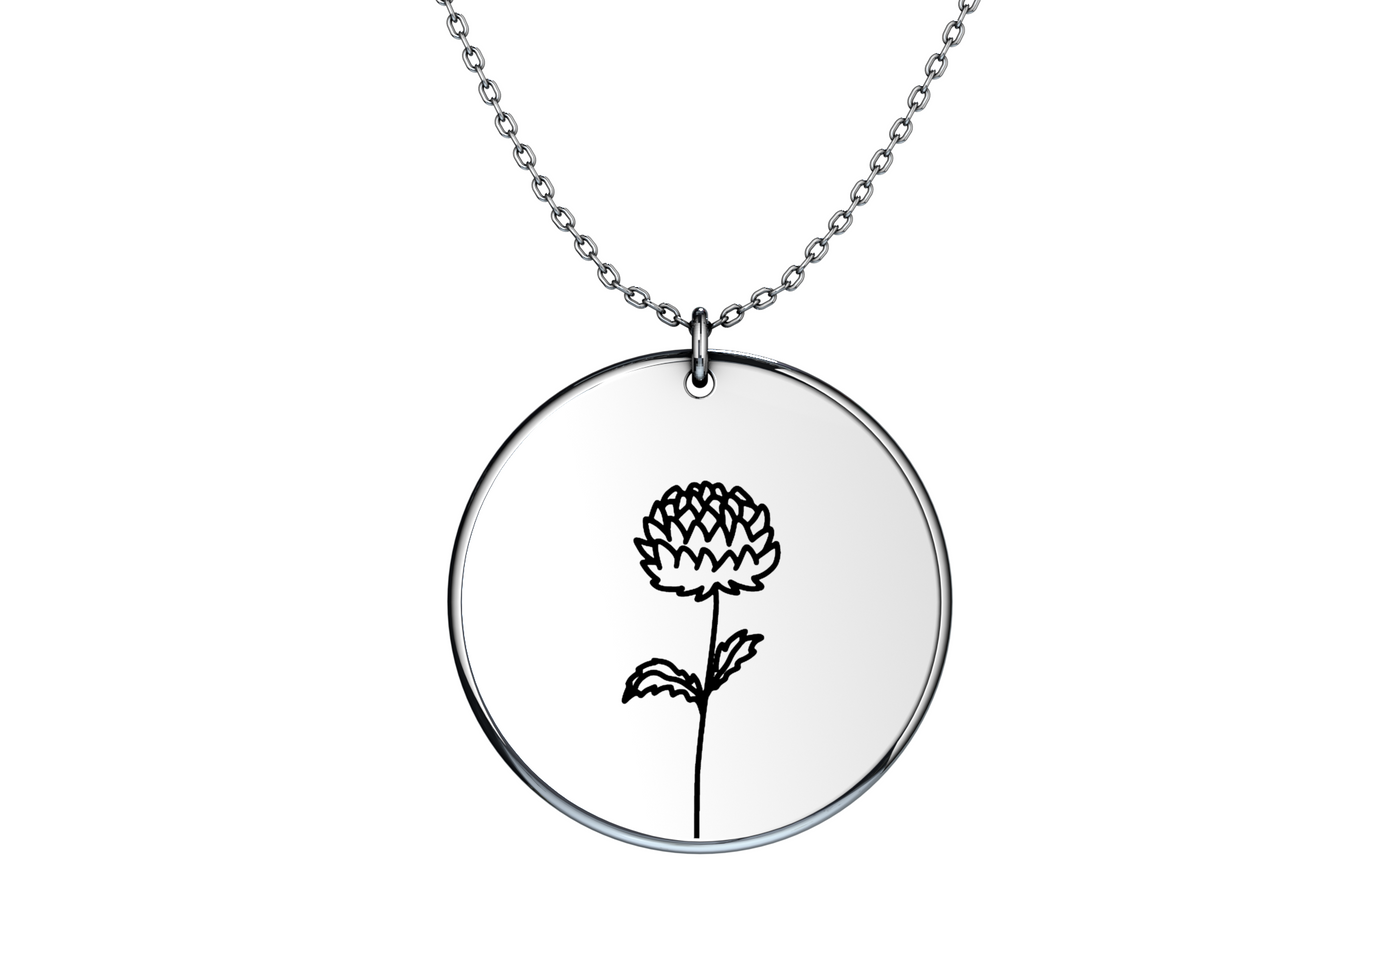 Birth Flower - Coin Necklace